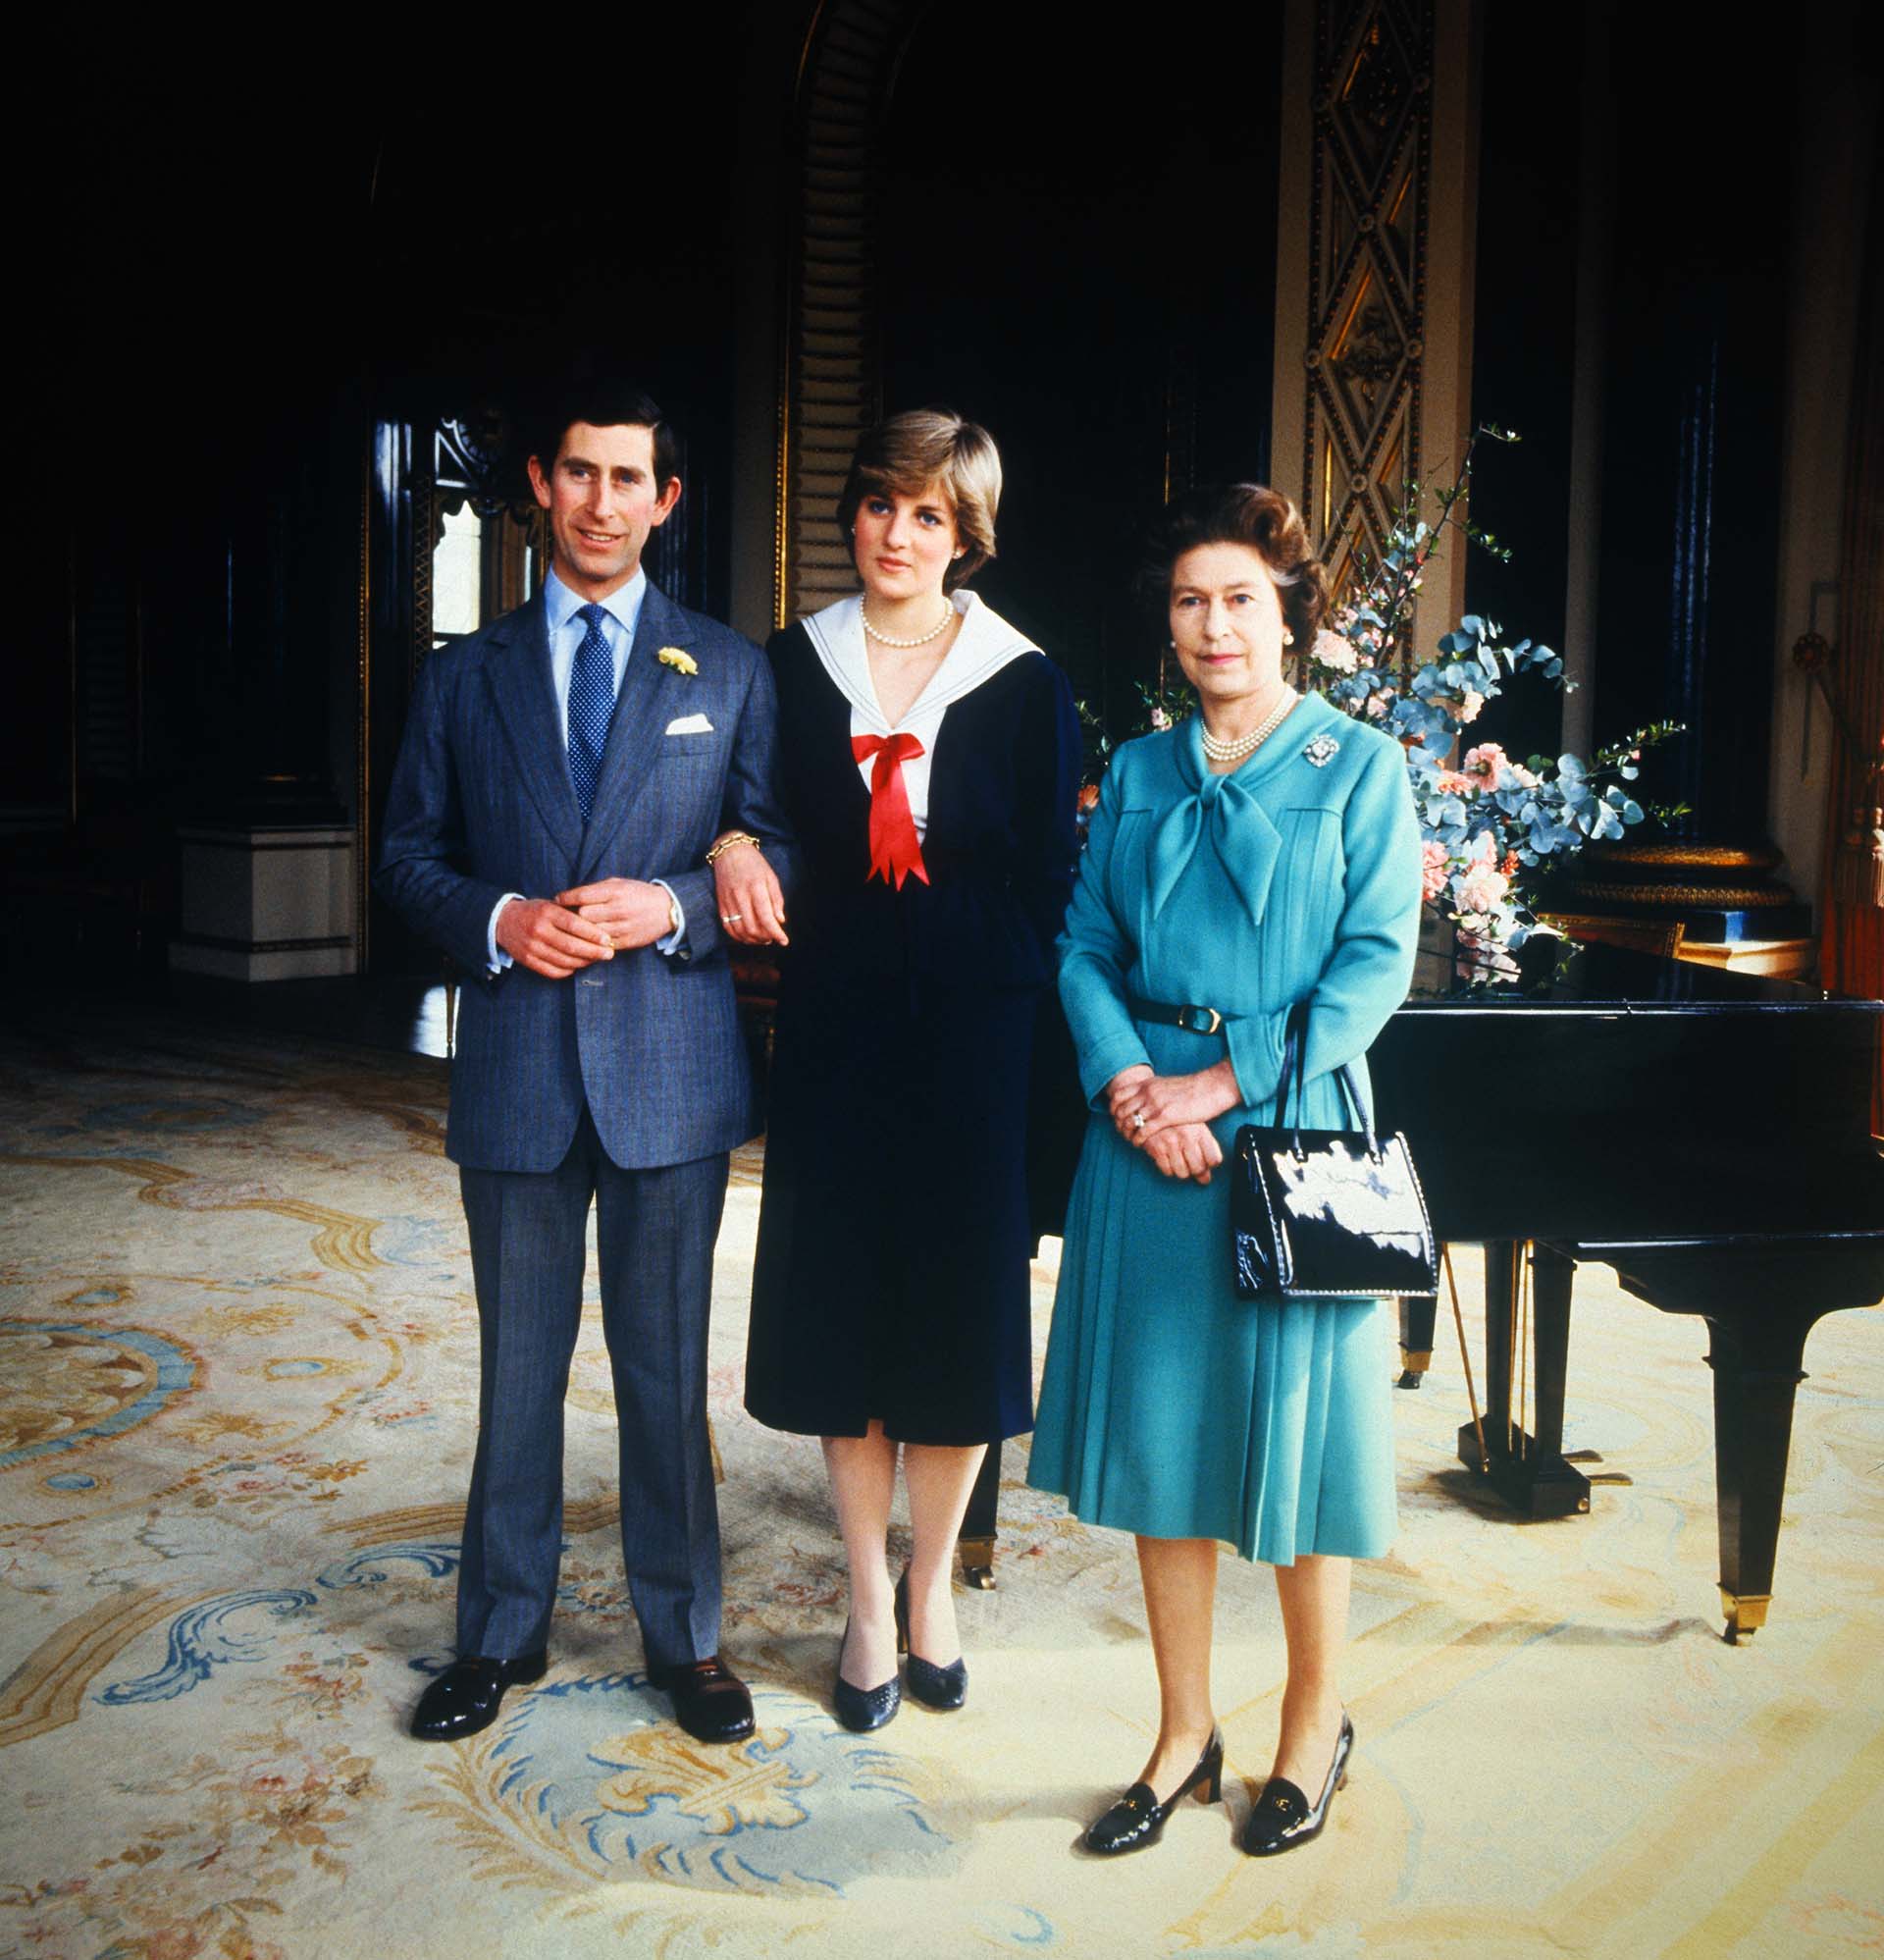 La Reina sabía que Diana pertenecía a una familia aristocrática y pensó que se adaptaría sin problemas al protocolo real (Bettmann Archive)